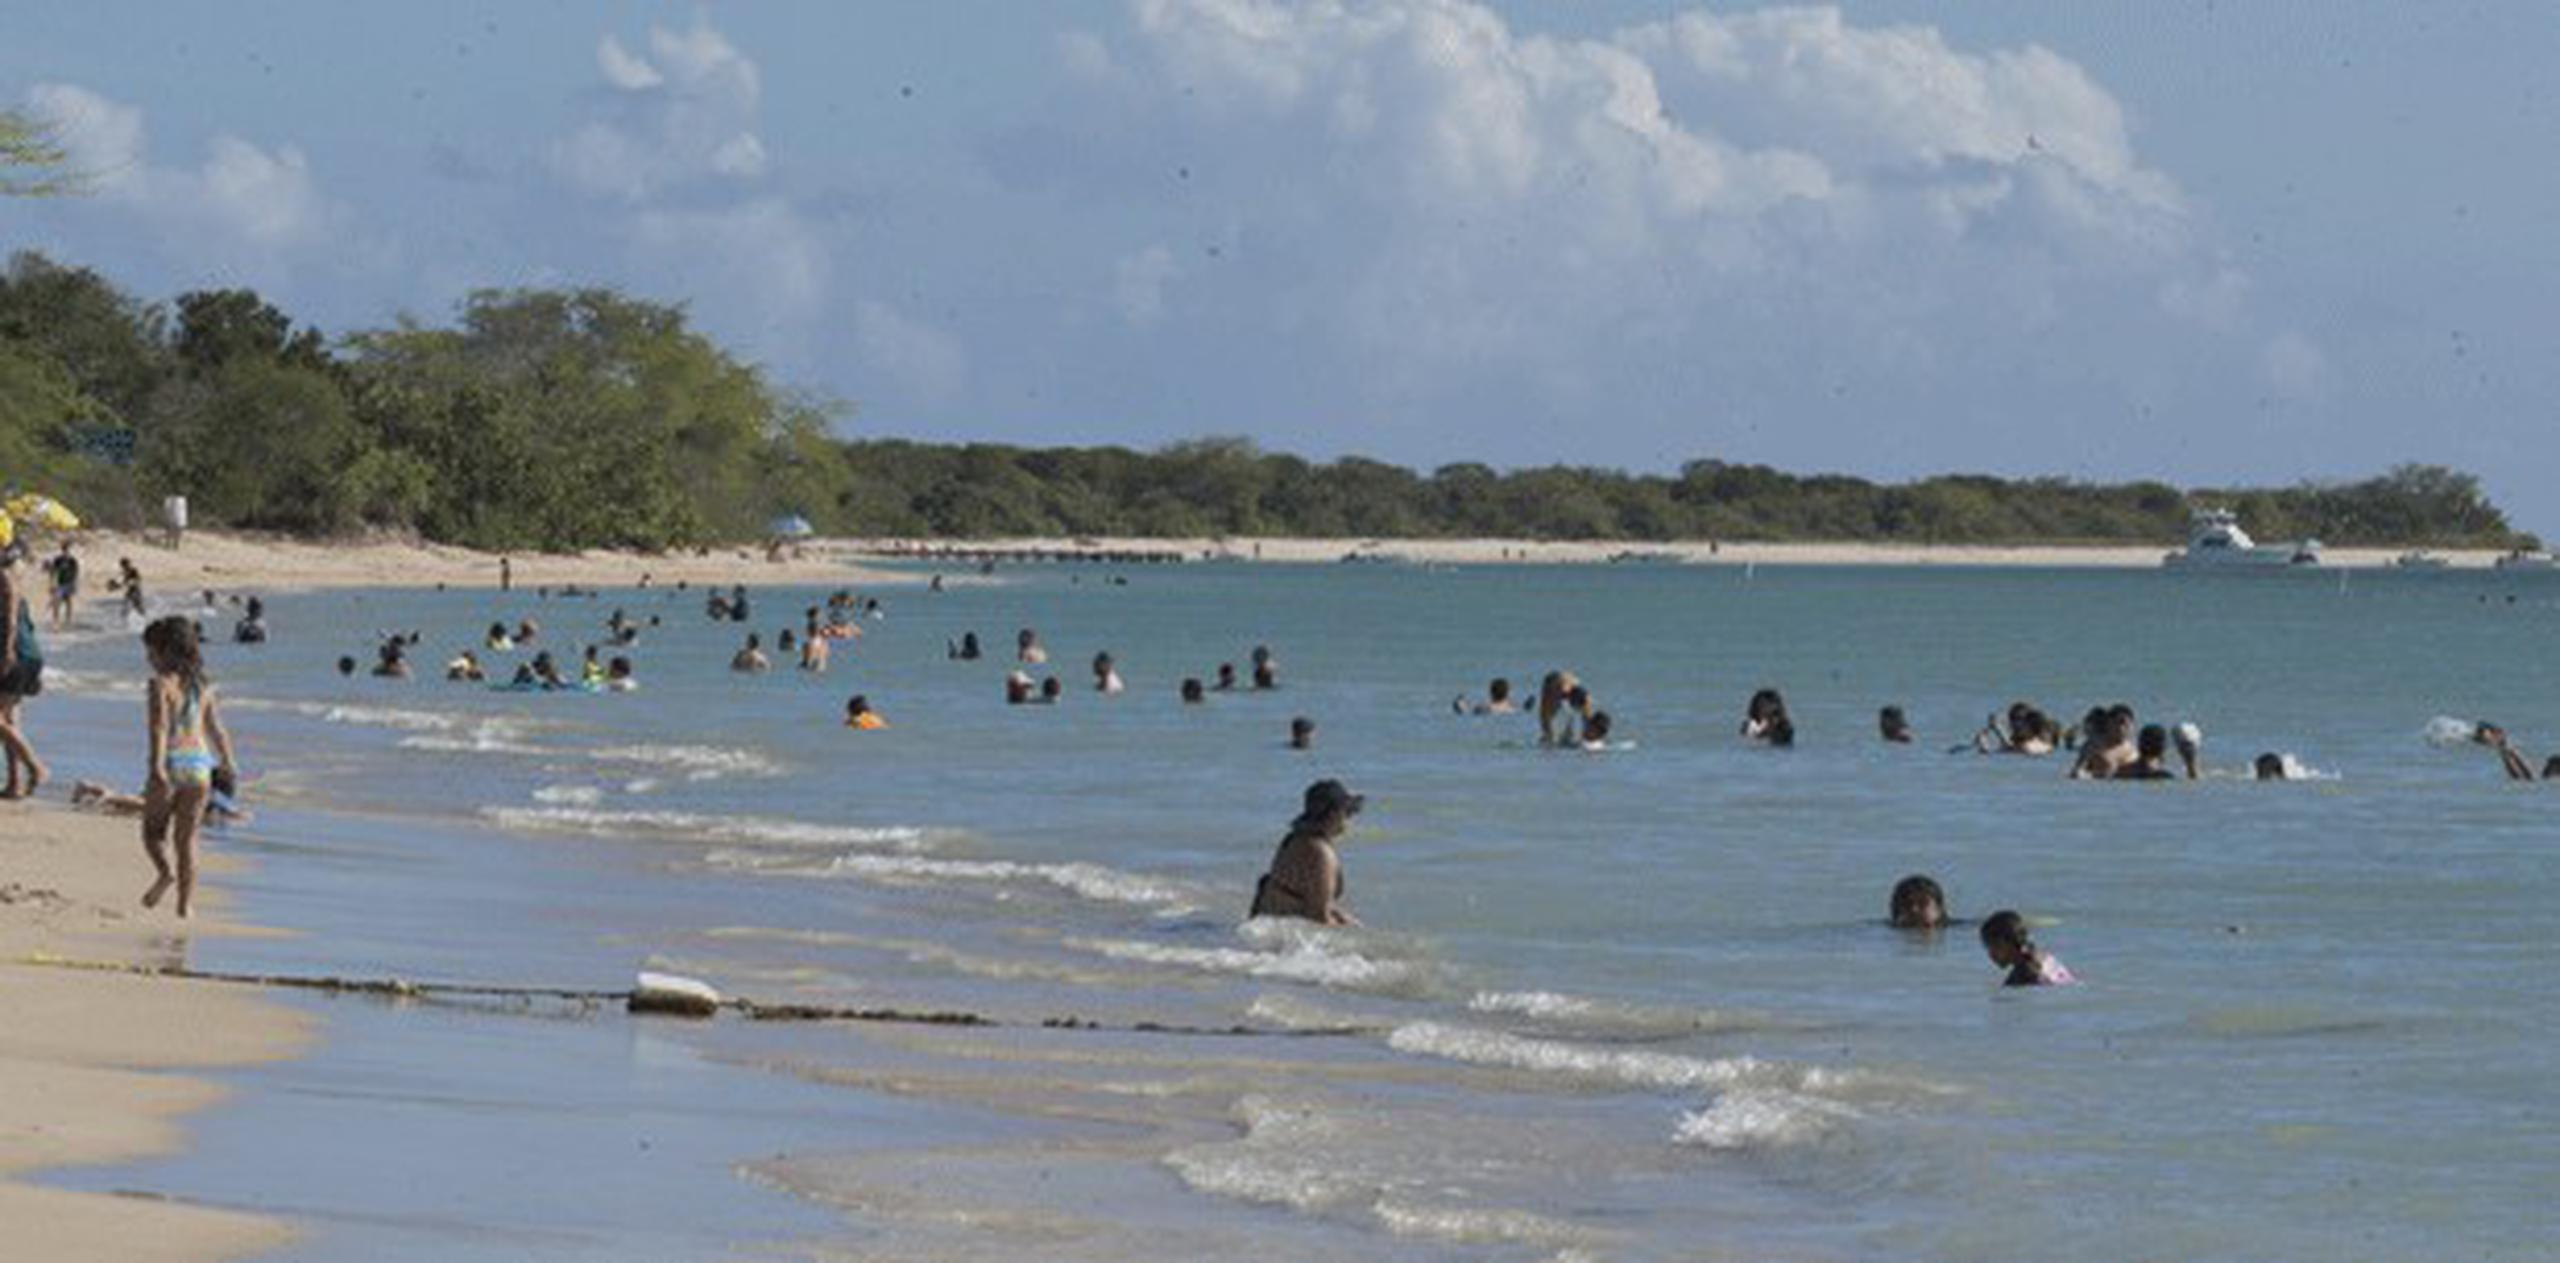 El informe de calidad de agua en esas playas emitido esta semana por la JCA refleja que todos los balnearios cumplen con los indicadores que miden concentraciones de coliformes fecales y los enterococos. (Archivo)